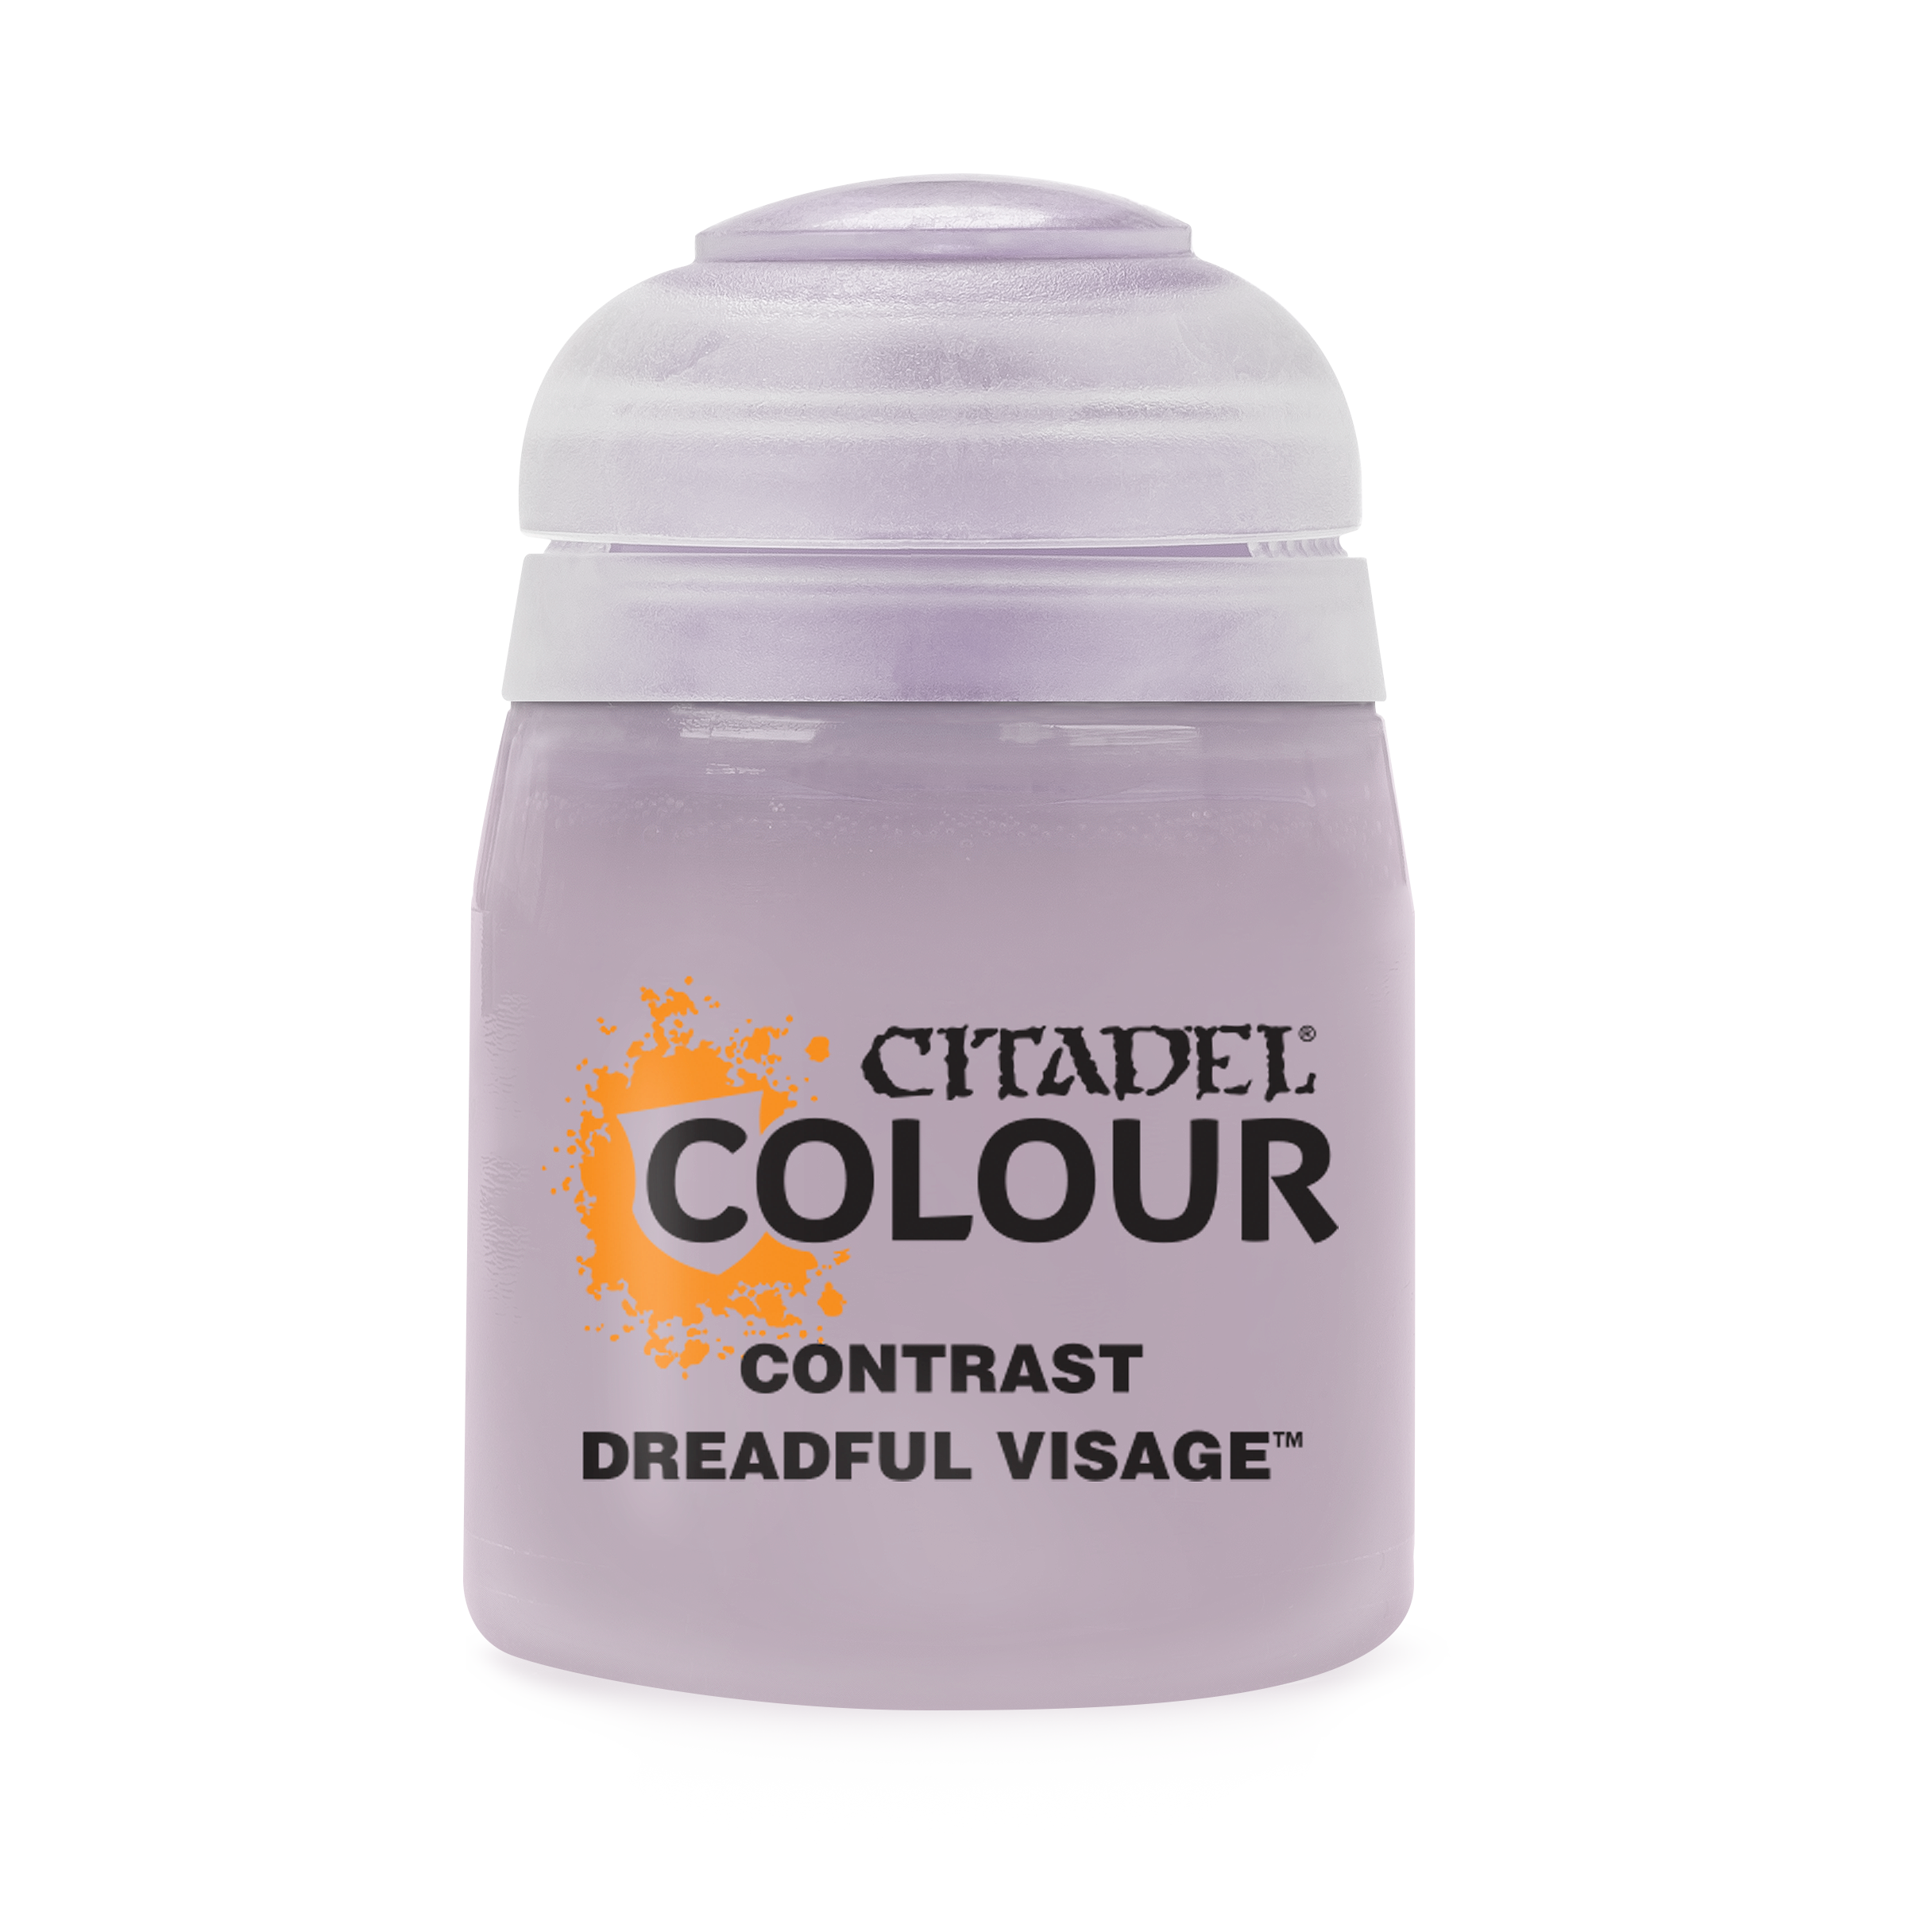 Contrast Dreadful Visage - Citadel Colour